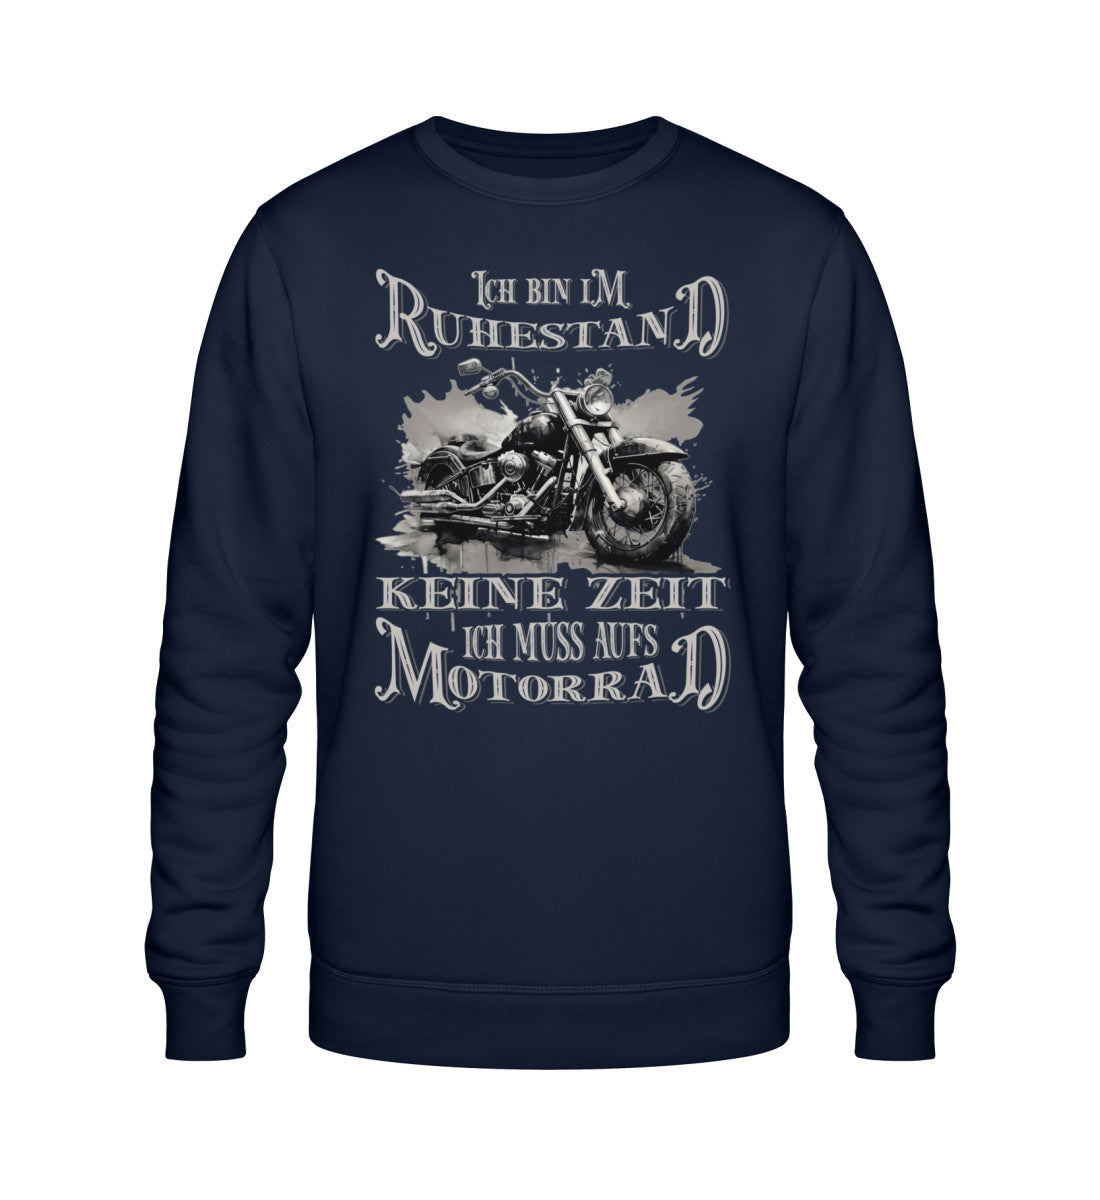 Ein Biker Sweatshirt für Motorradfahrer von Wingbikers mit dem Aufdruck, Ich bin im Ruhestand - Keine Zeit - Ich muss aufs Motorrad, in navy blau.